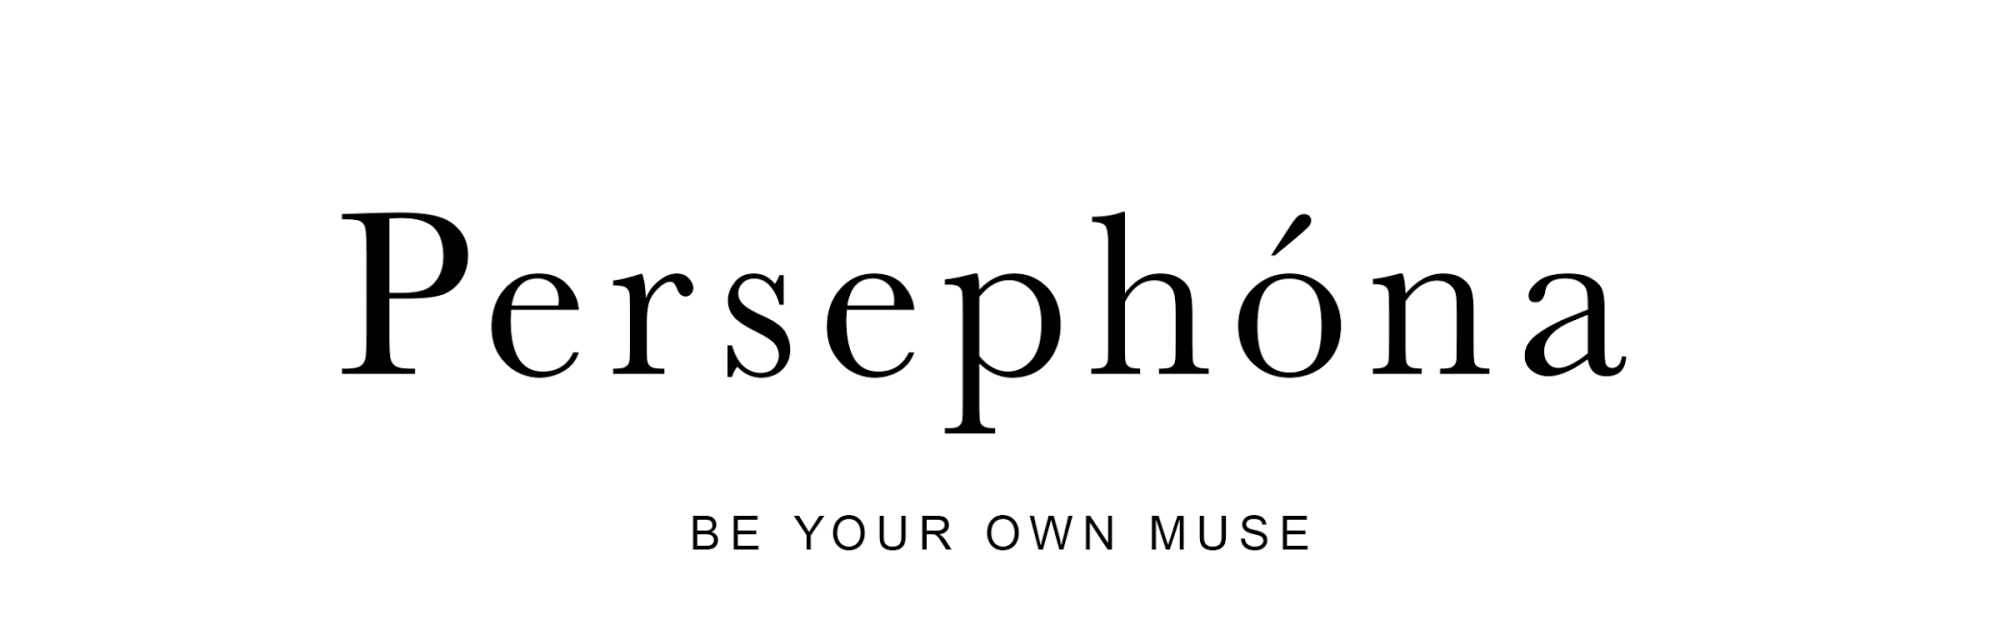 Persephóna Одежда и аксессуары, купить онлайн, Persephóna в универмаге Bolshoy